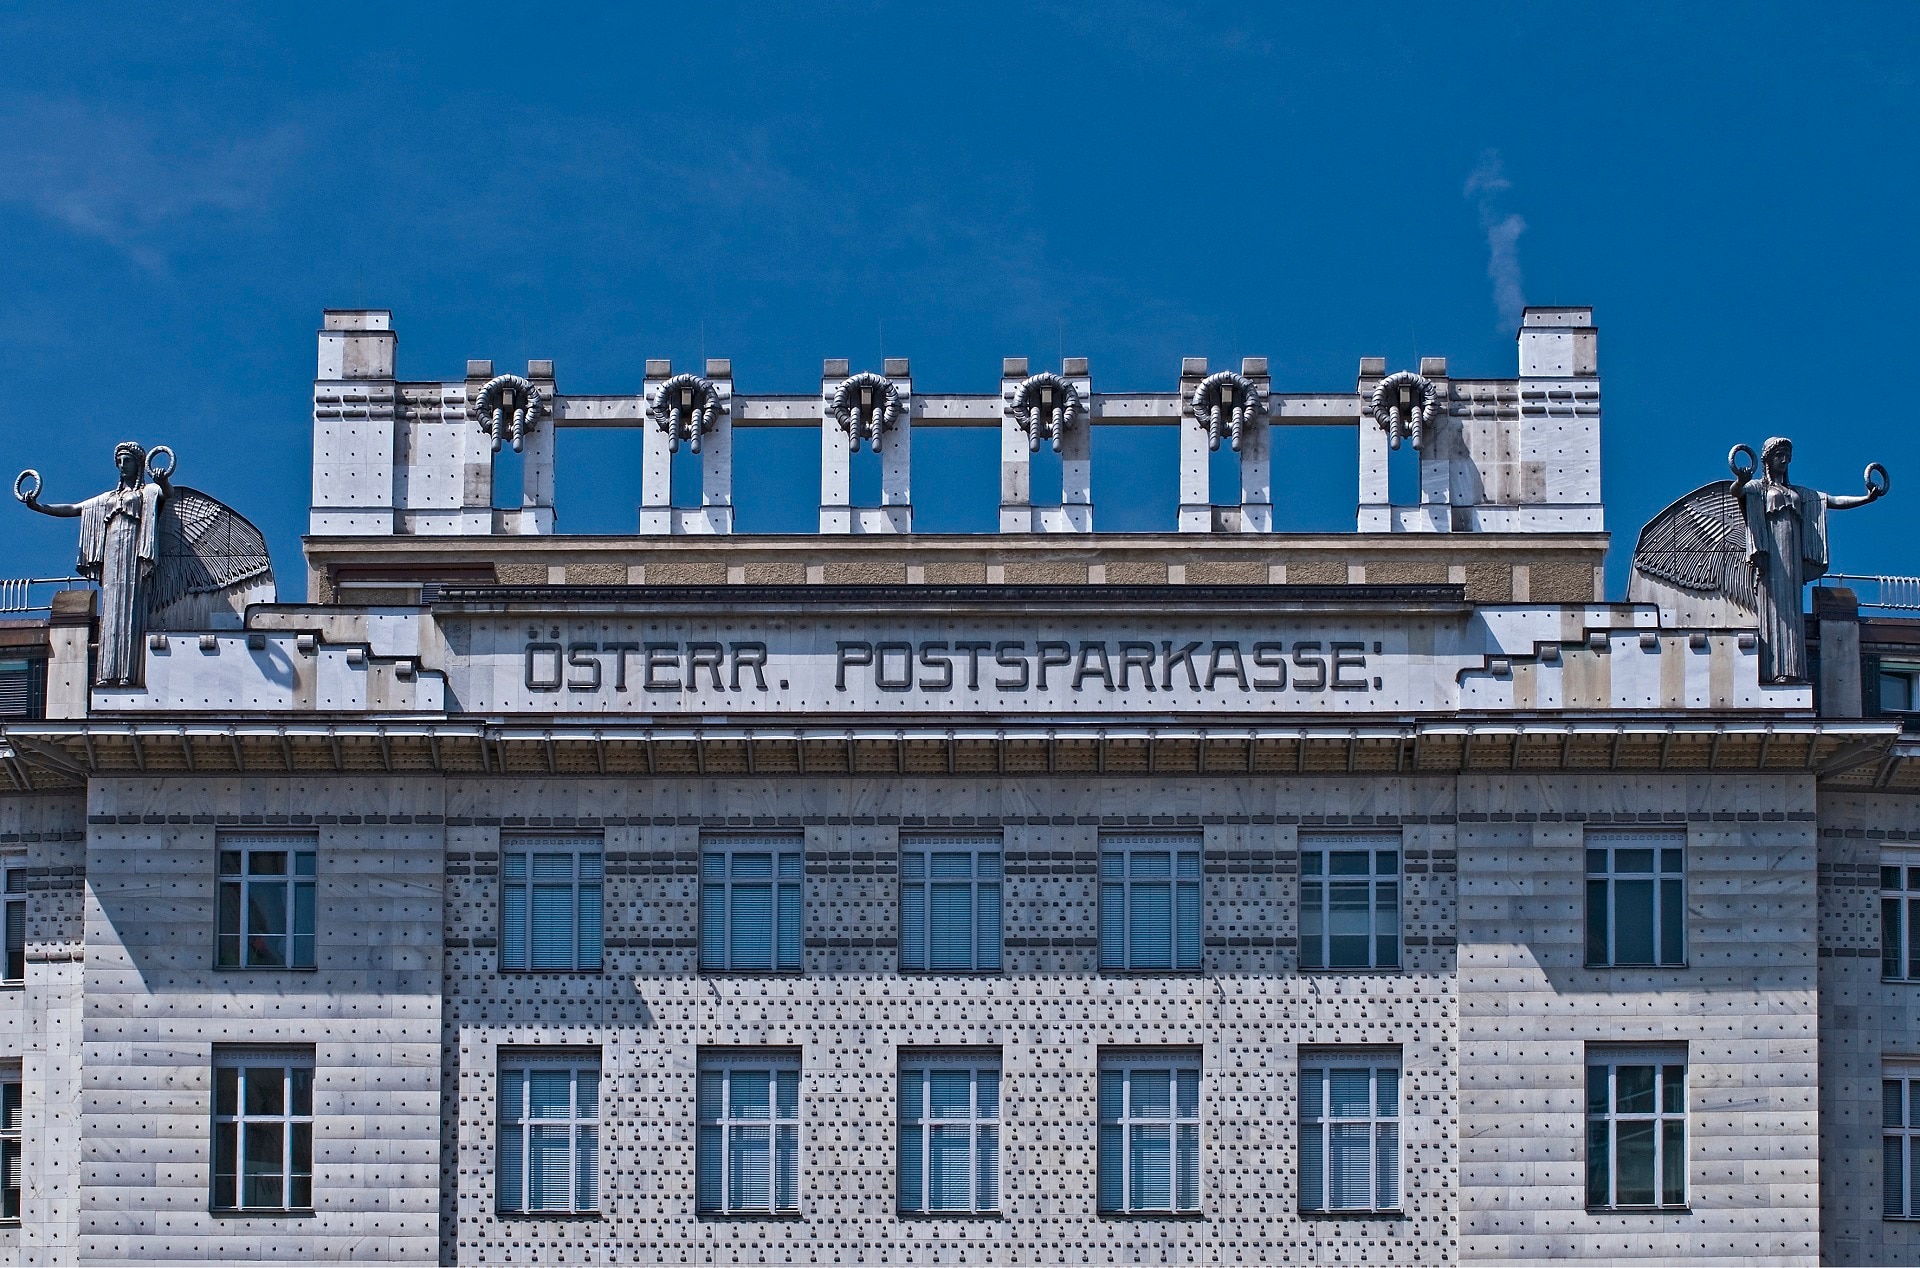 Otto Wagner, Cassa di Risparmio postale, dettaglio facciata, Vienna, 1903-1912